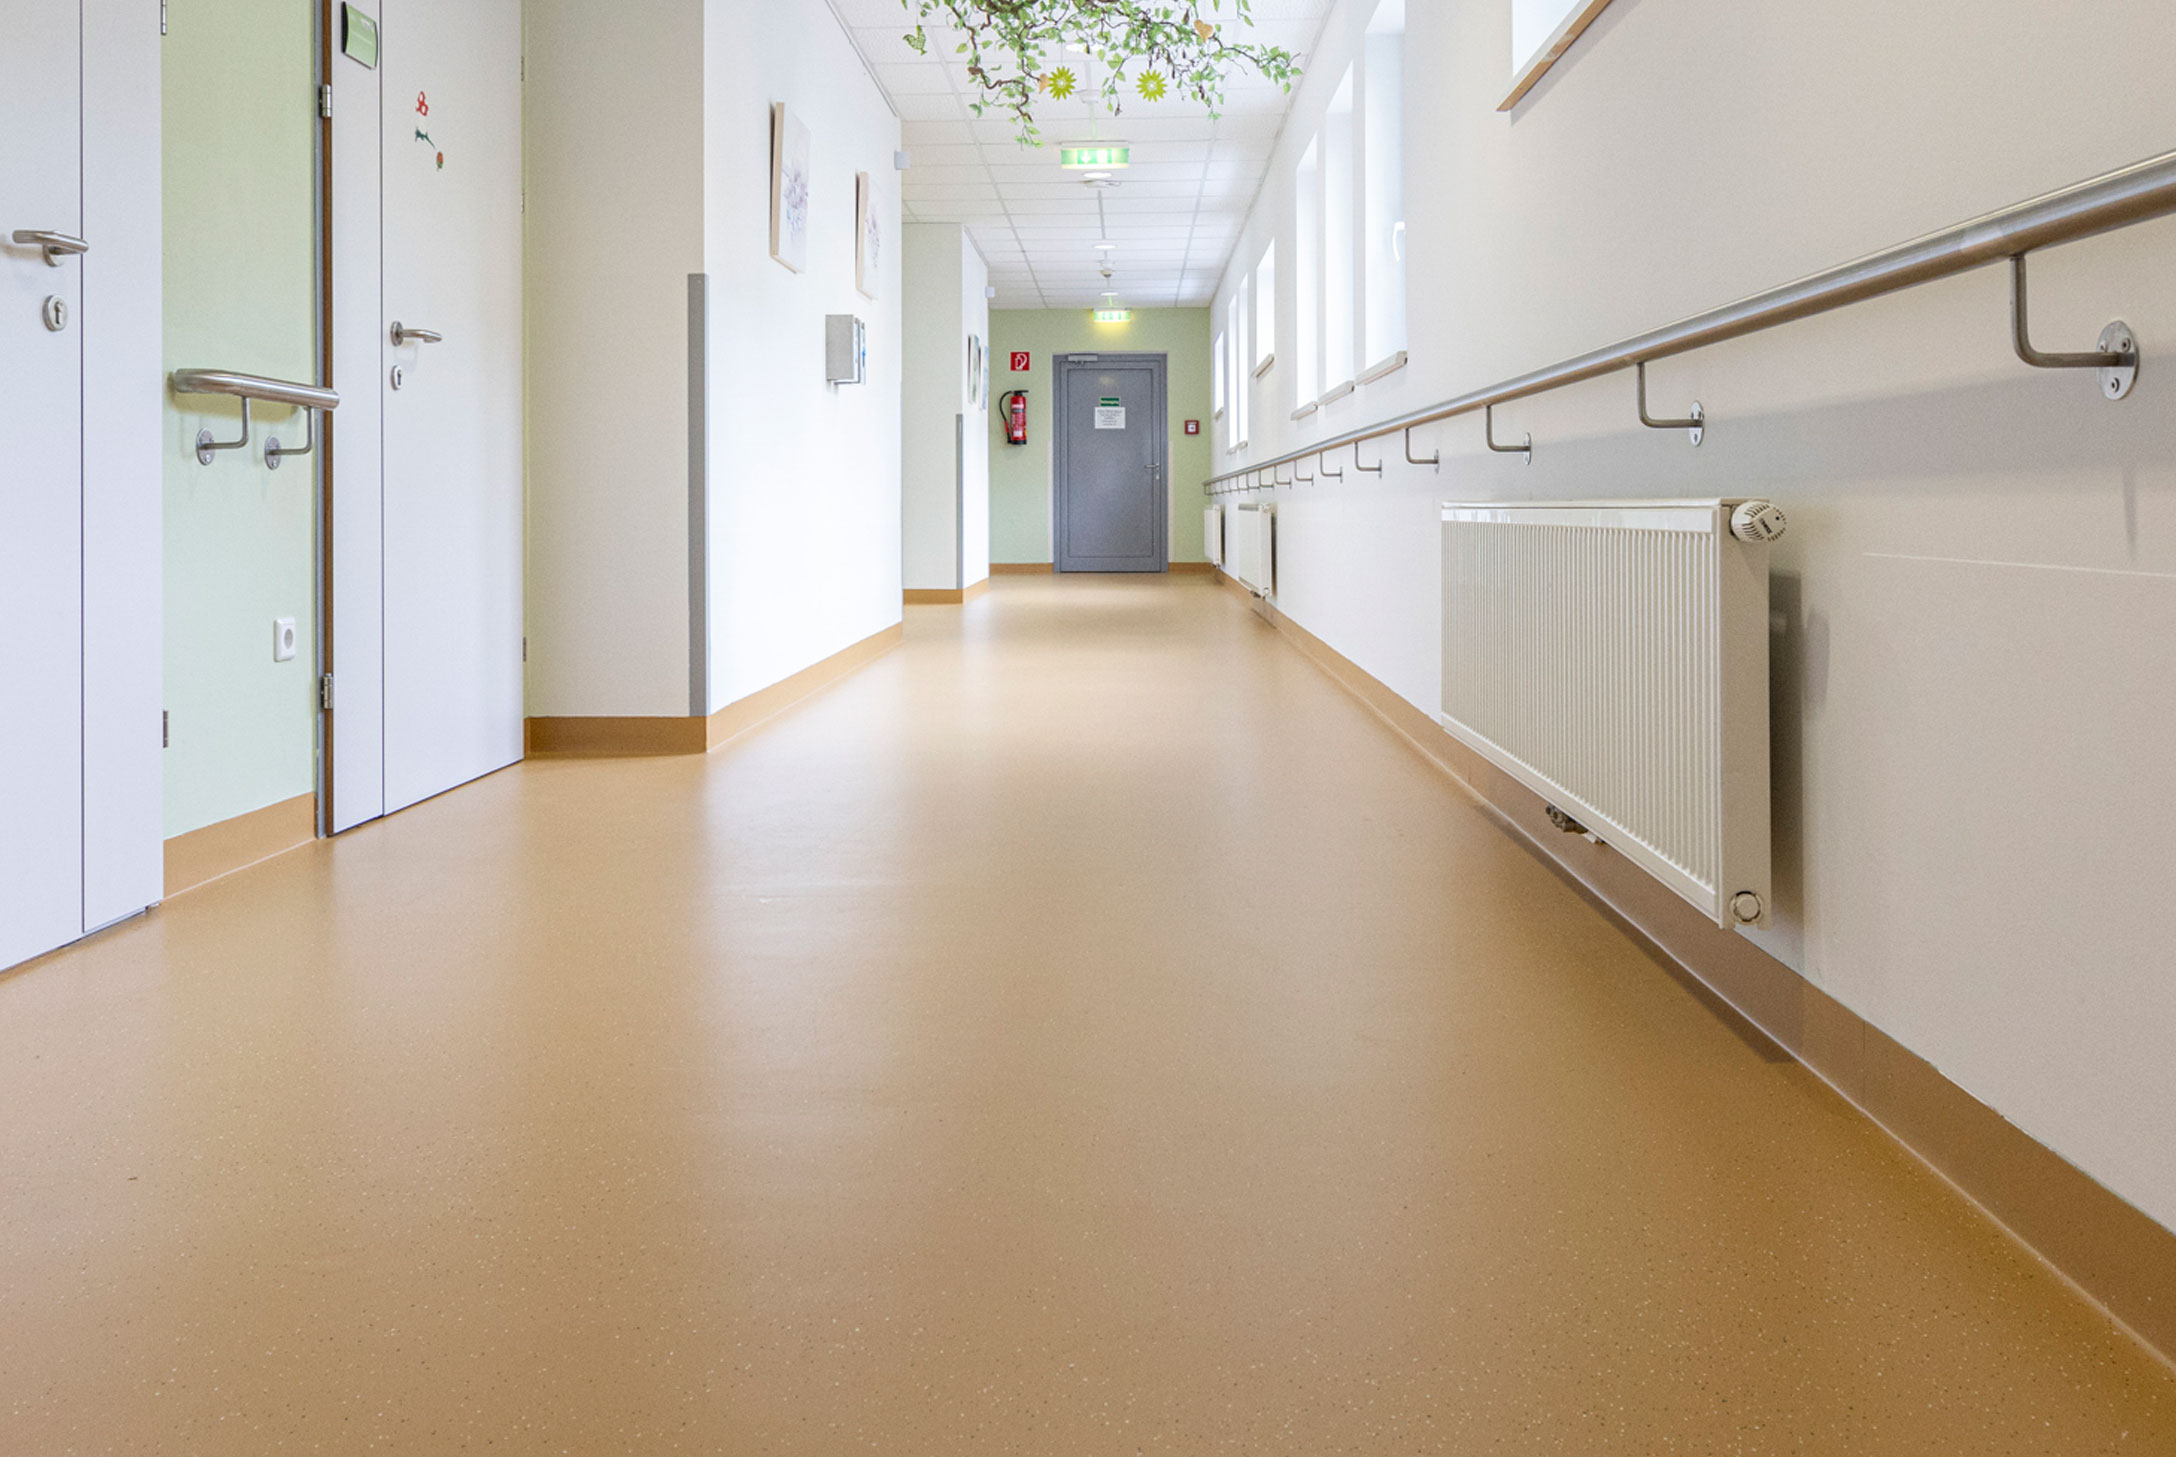 Bild zeigt Gang eines frisch sanierten und gechipten Kunststoffboden im Pflegeheim Althea.